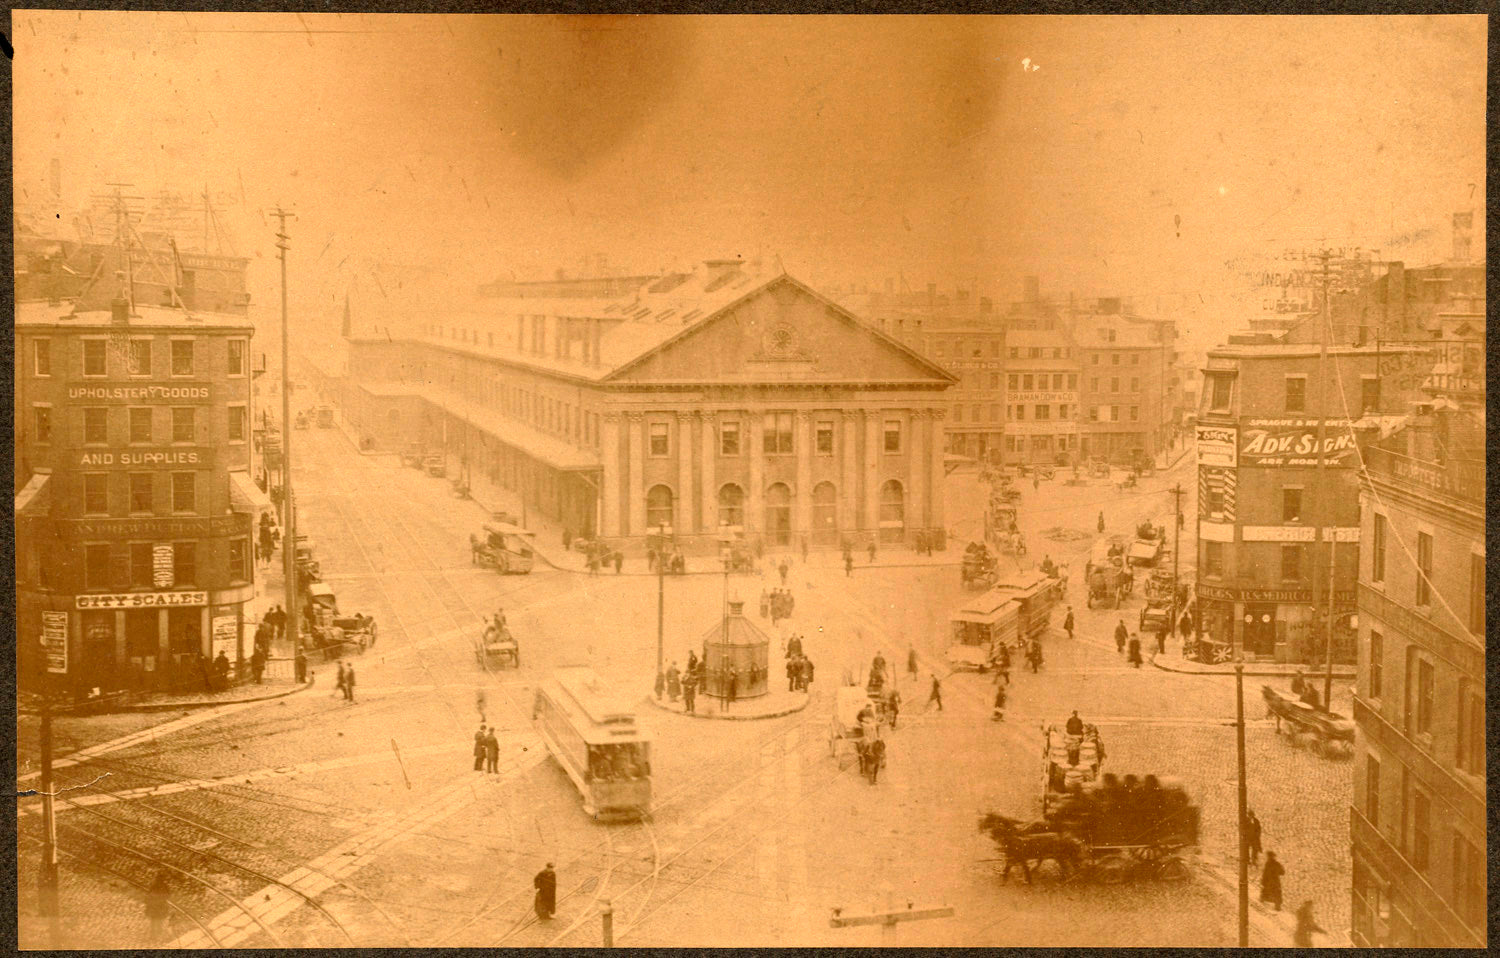 Boston, Massachusetts, in the 1890s For sale as Framed Prints